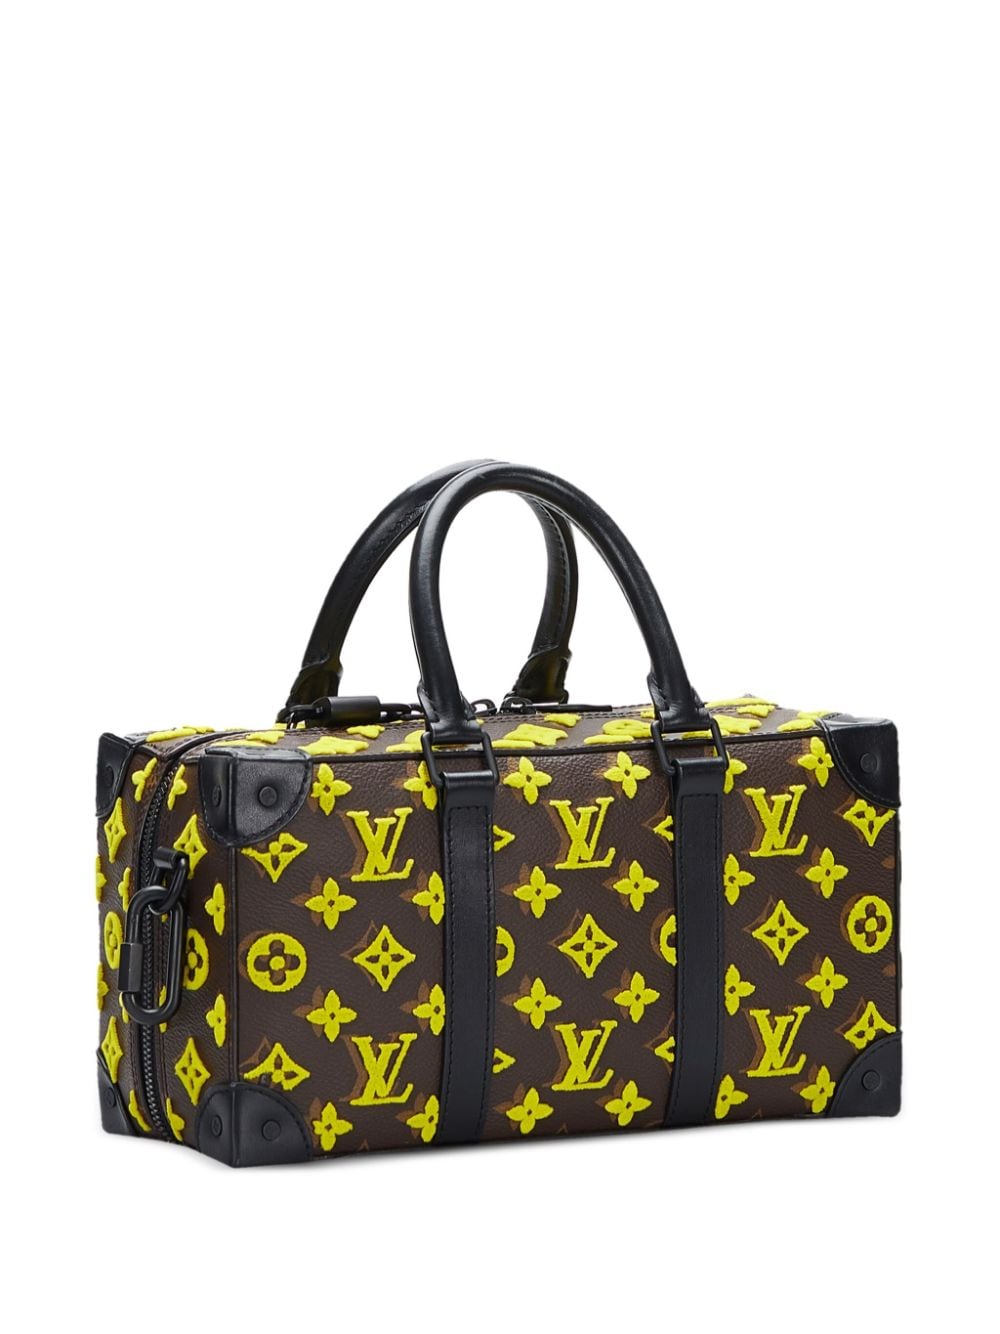 Louis Vuitton Yellow Bags & Handbags for Women